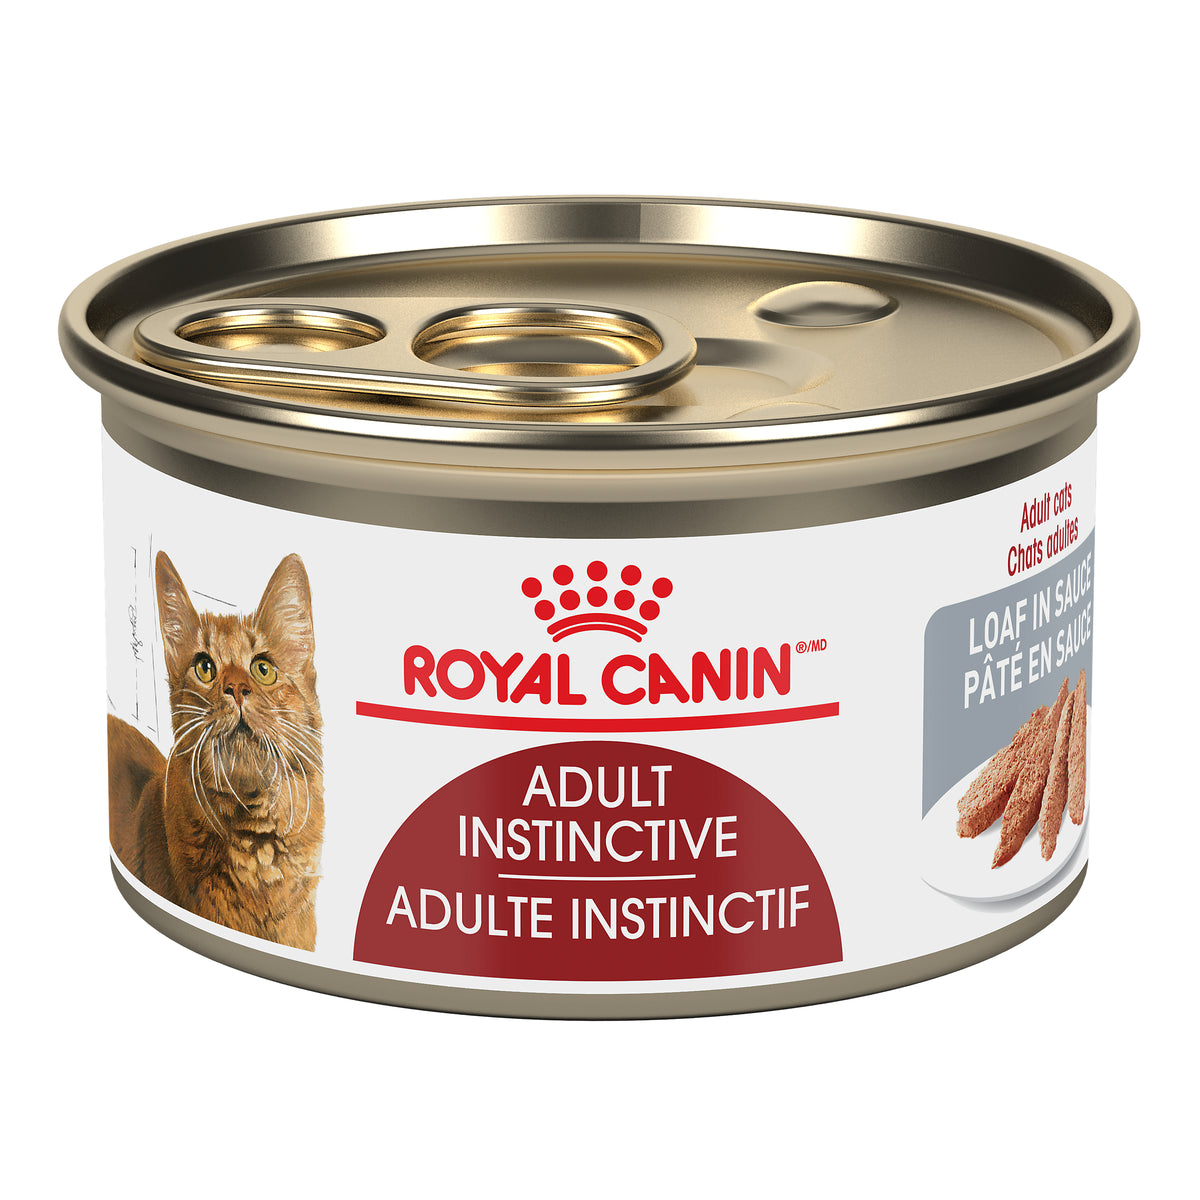 Royal Canin Adulte Instinctif (Pâté en Sauce) - Nourriture humide en conserve pour chats